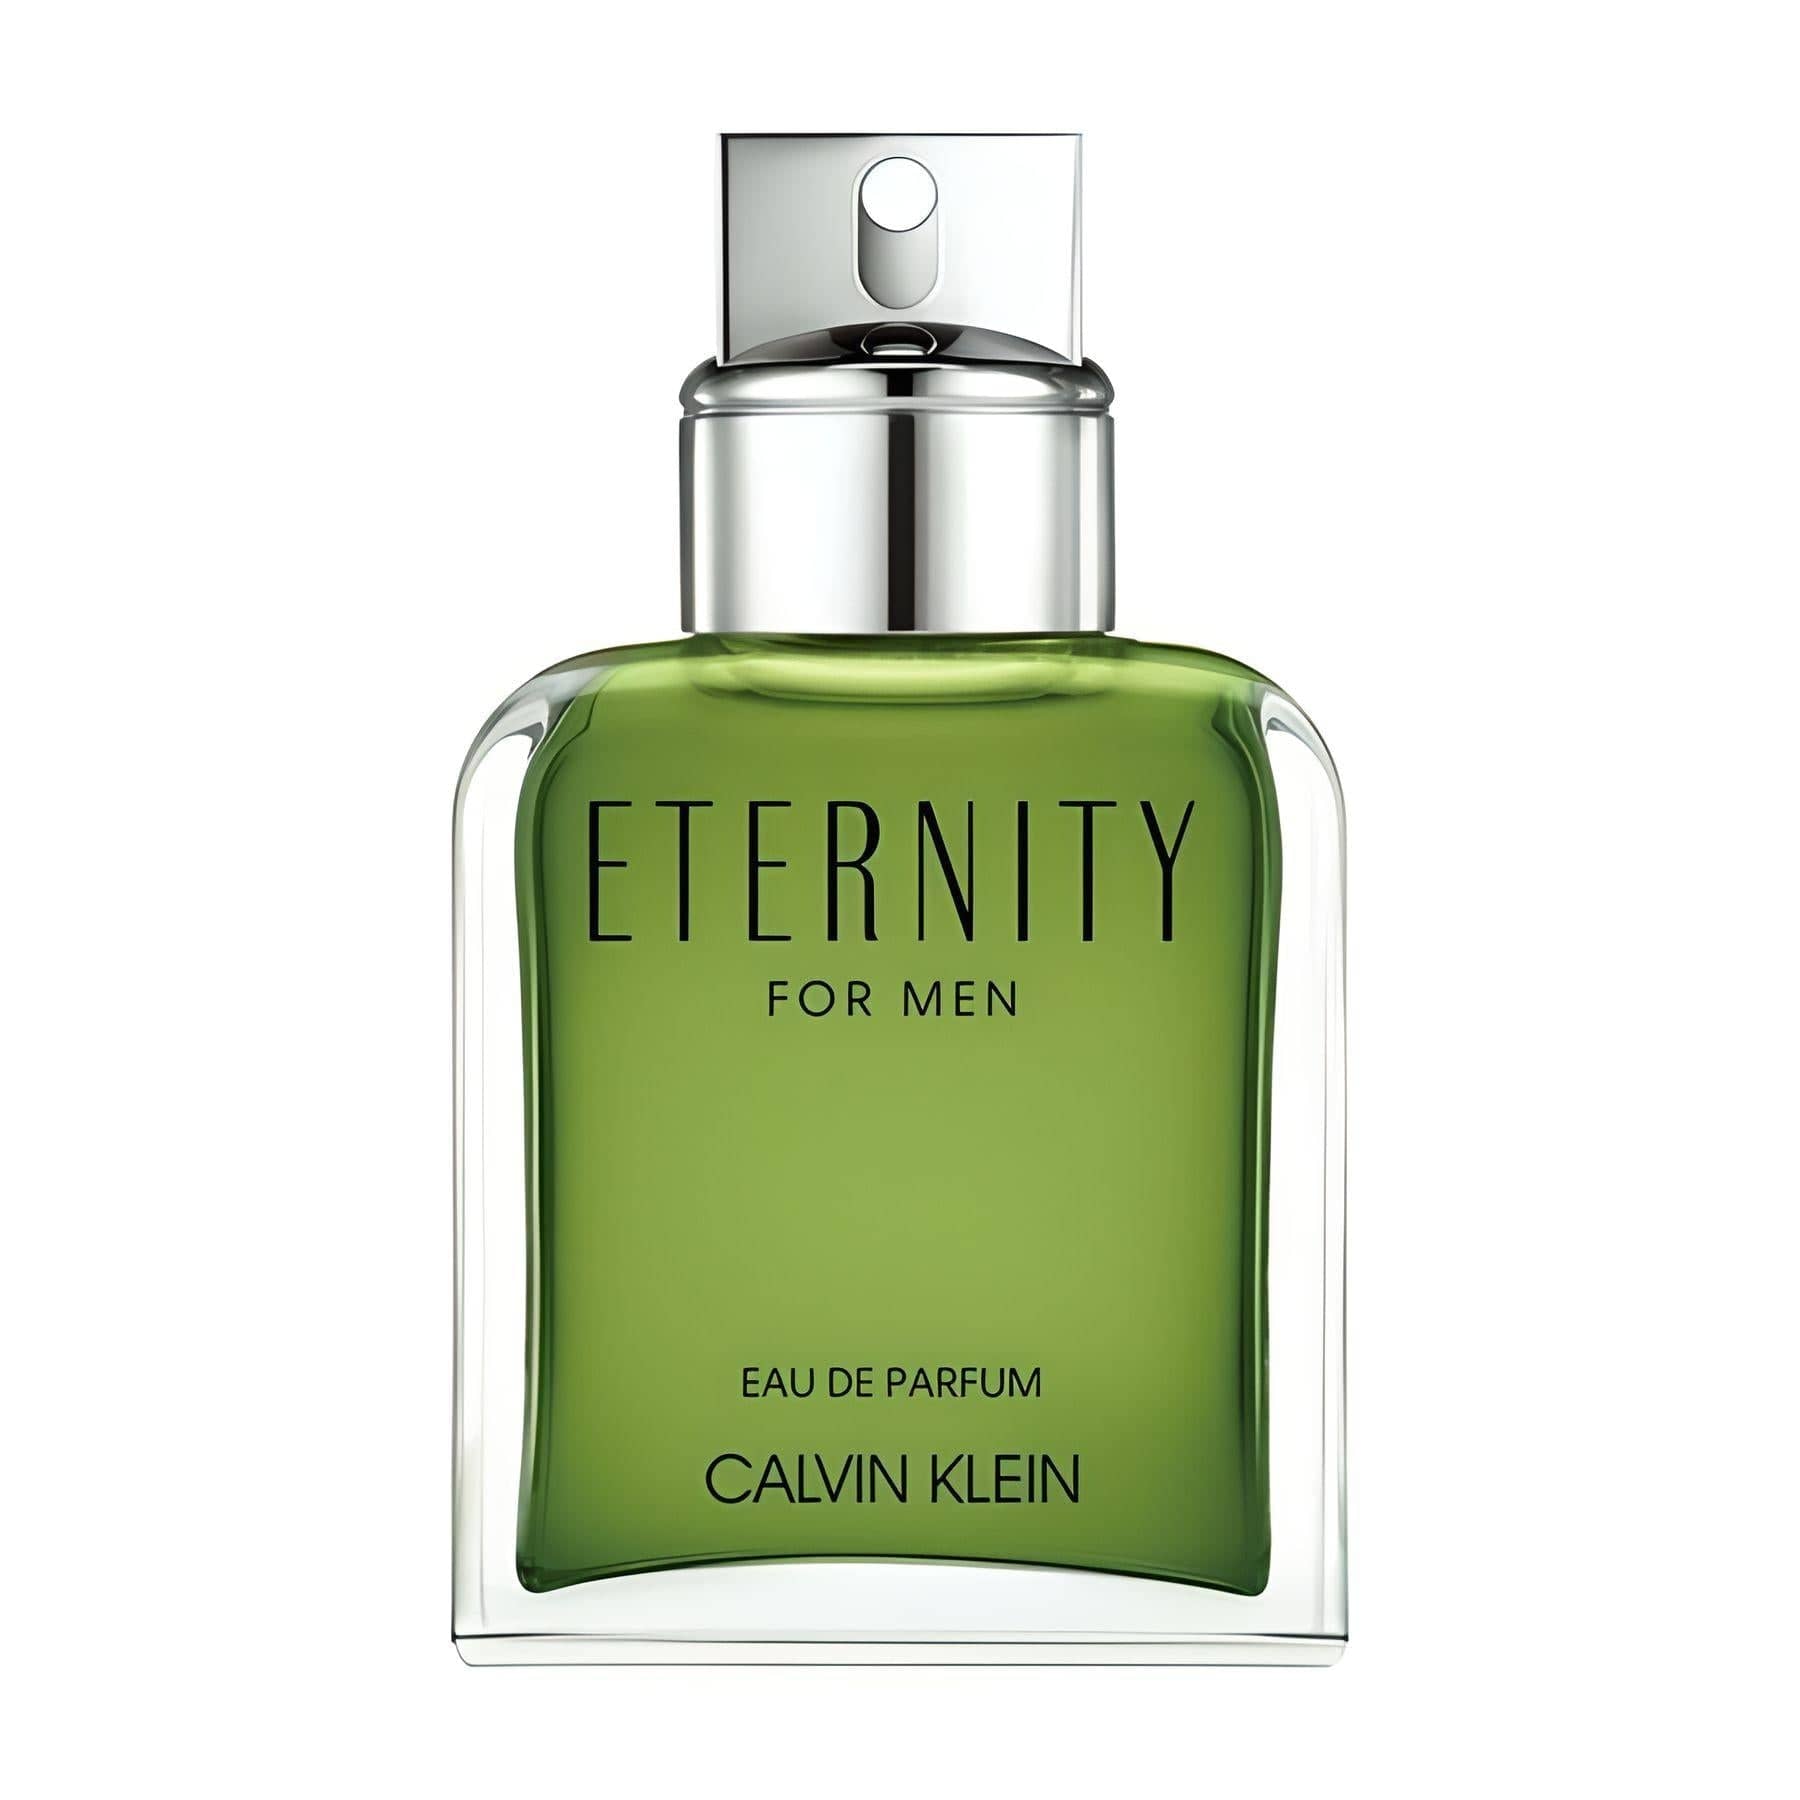 ETERNITY FOR MEN Eau de Parfum Eau de Parfum CALVIN KLEIN   